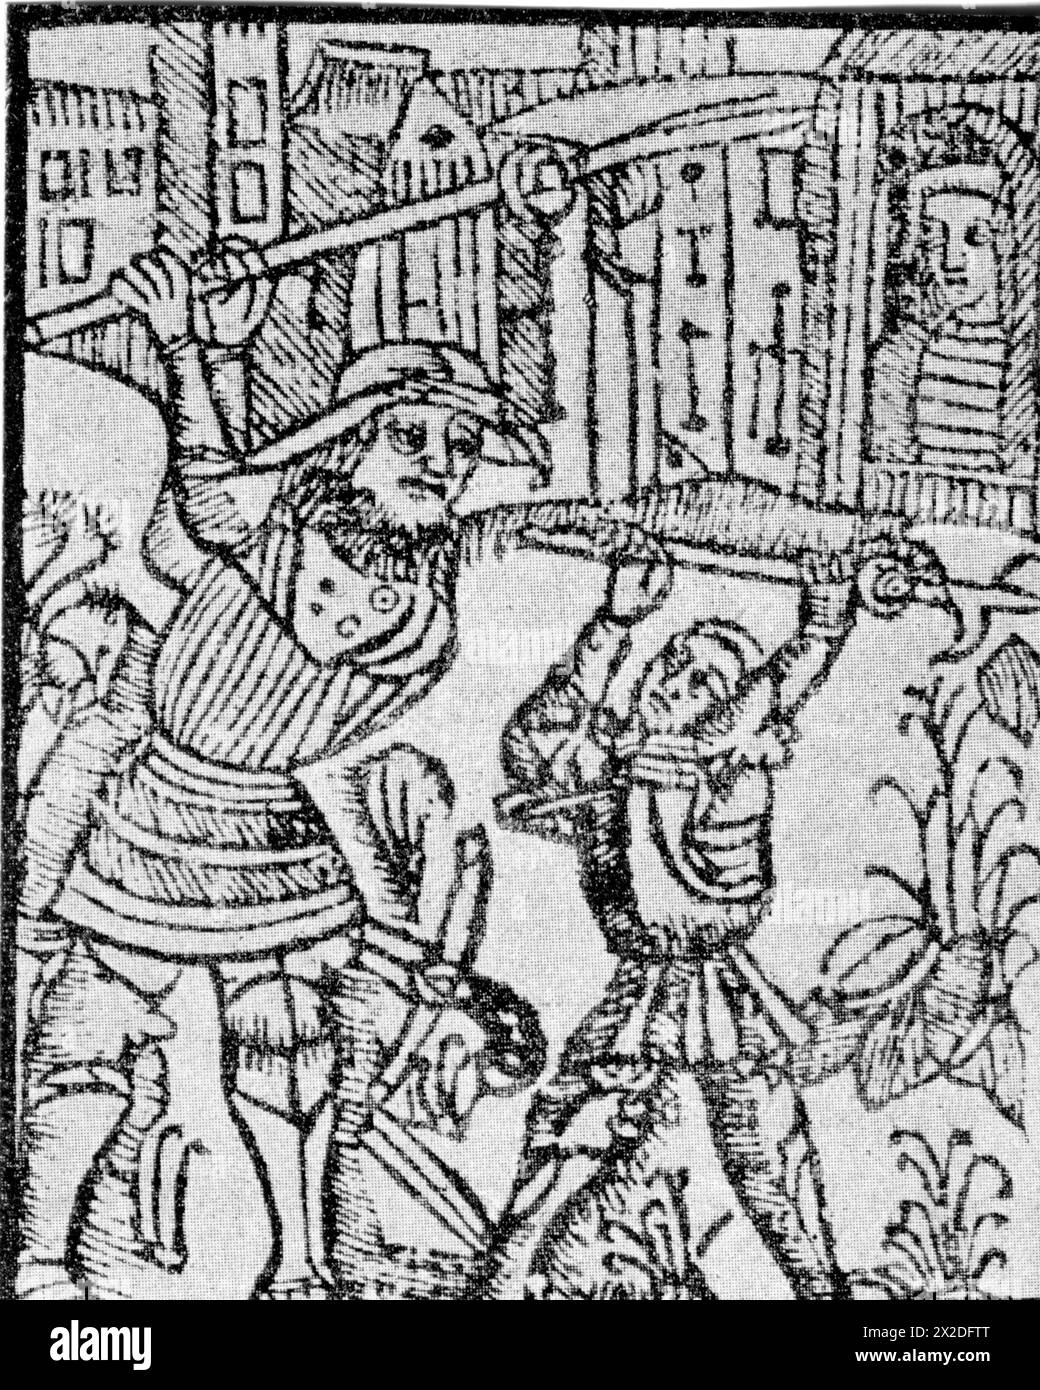 Warwick, Guy of, XIIIe siècle, légendaire chevalier britannique, battant le géant Colbrand, gravure sur bois, 1560, ADDITIONAL-RIGHTS-CLEARANCE-INFO-NOT-AVAILABLE Banque D'Images